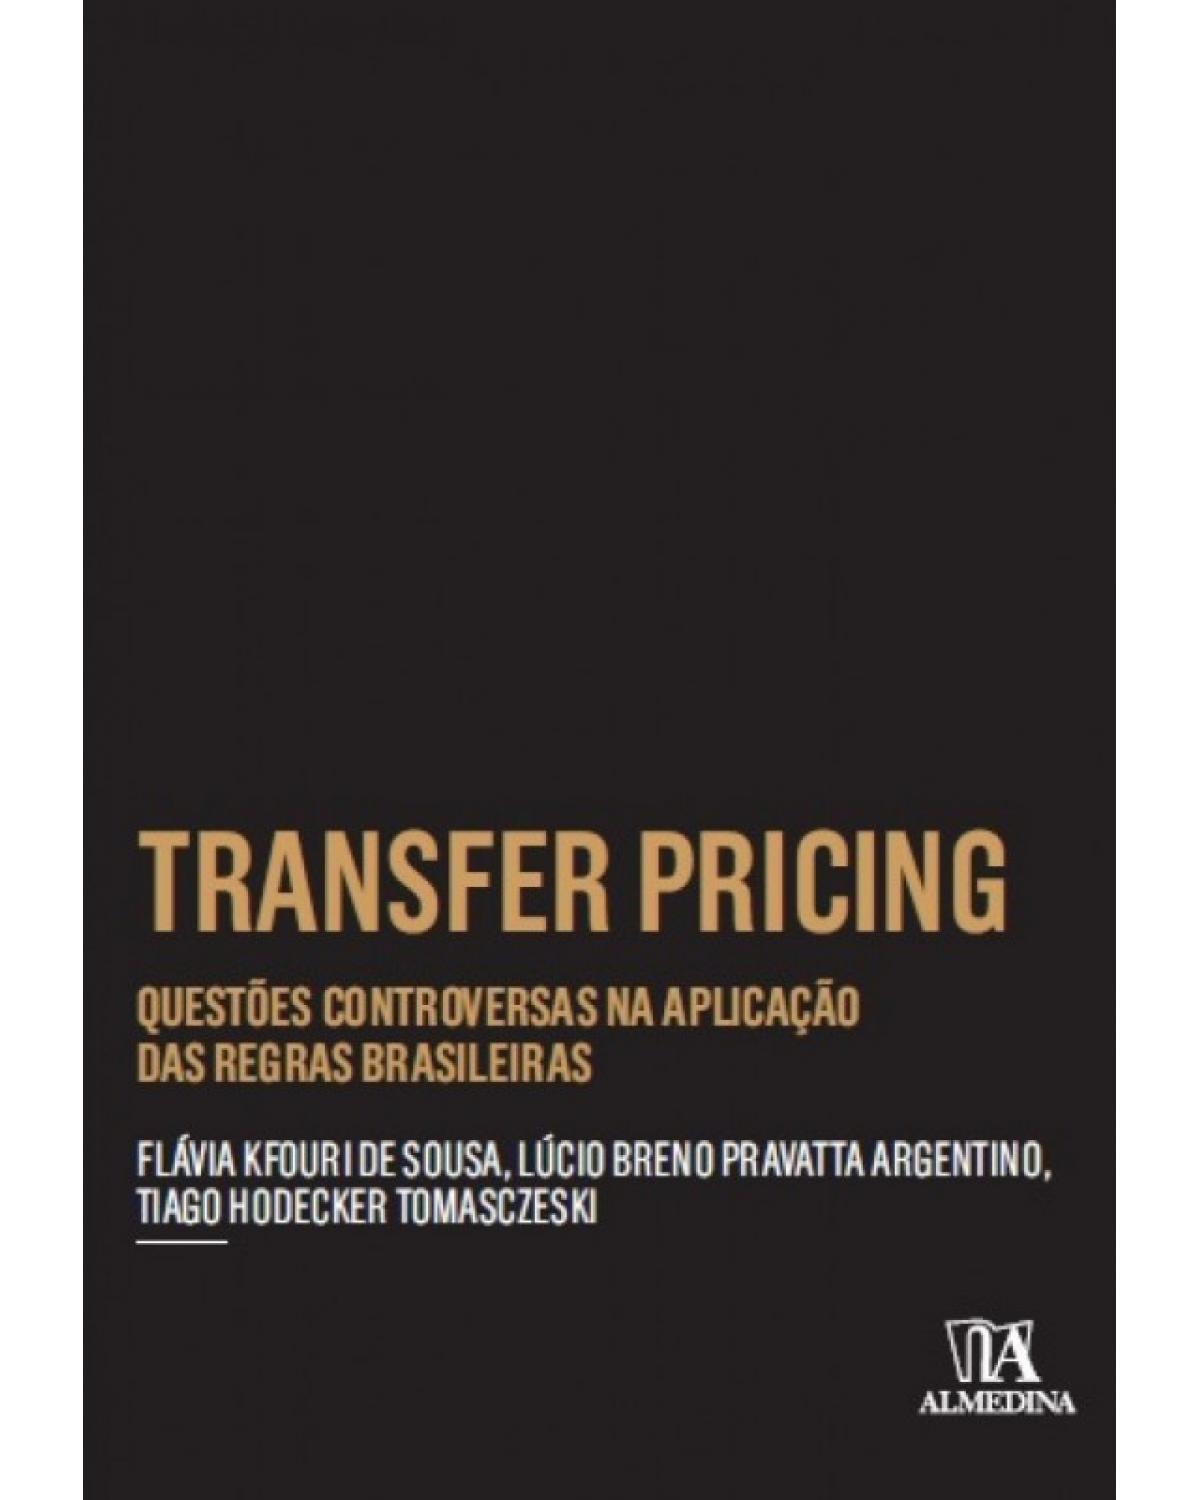 Transfer pricing - questões controversas na aplicação das regras brasileiras - 1ª Edição | 2017